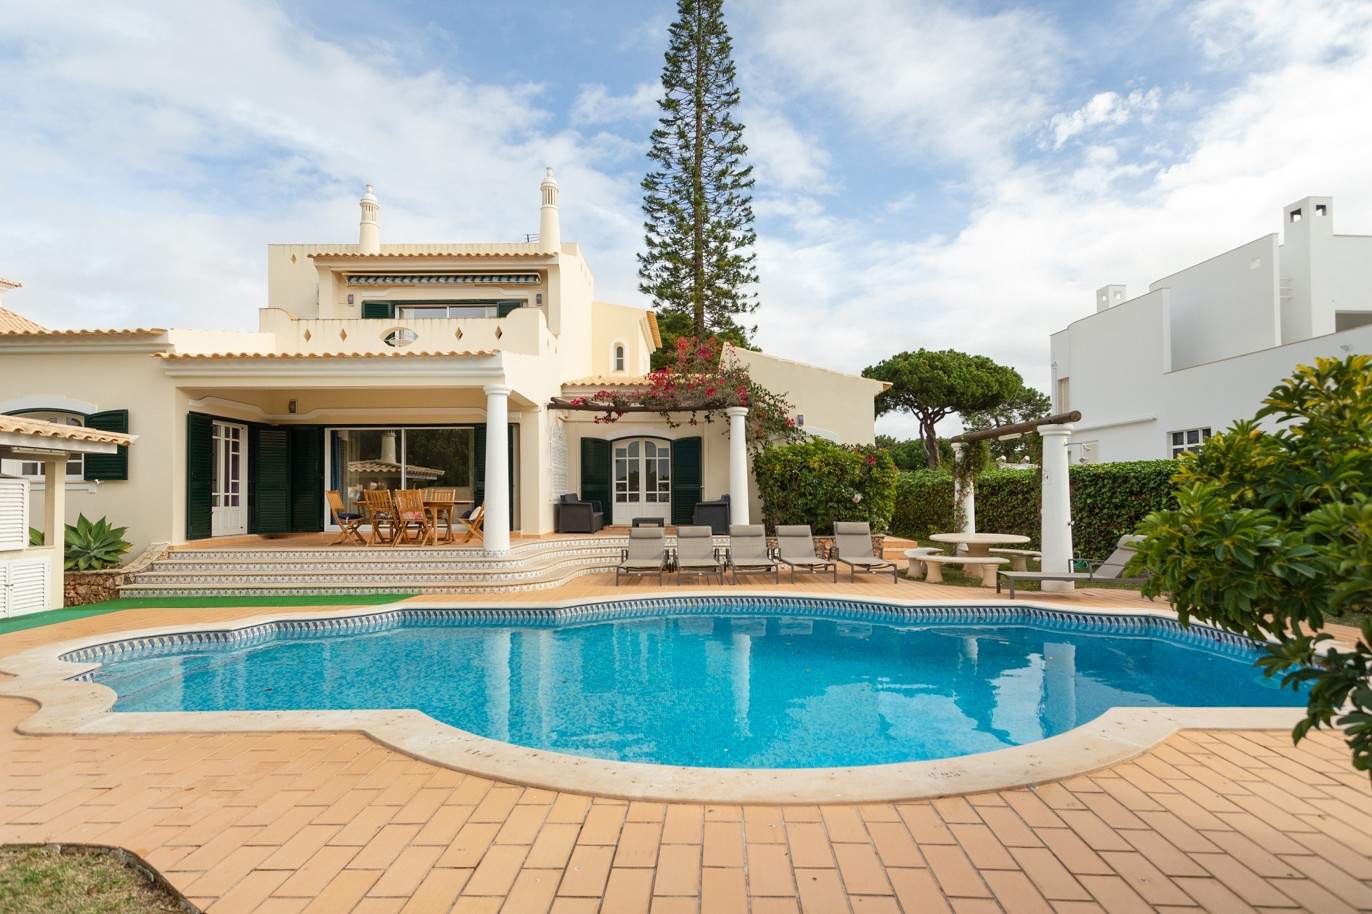 5 Bedroom Villa with swimming pool, for sale in Vilamoura, Algarve_212569